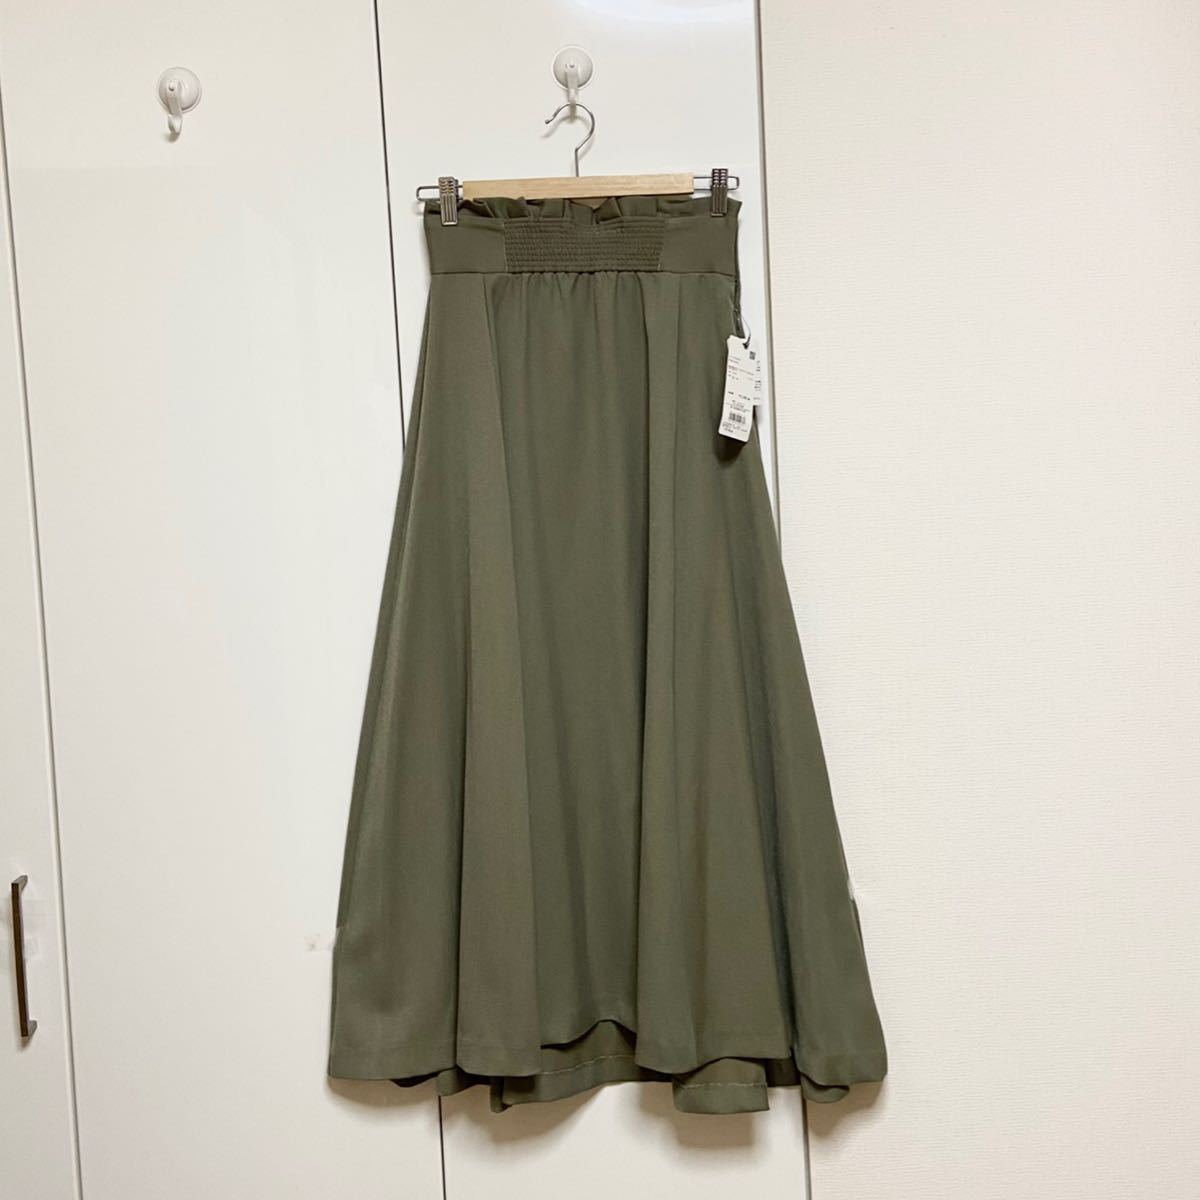  new goods Nano Universe × Yoshikawa Hinano [nano*universe × HINANO YOSHIKAWA ] front gathered skirt regular price 13200 jpy 36